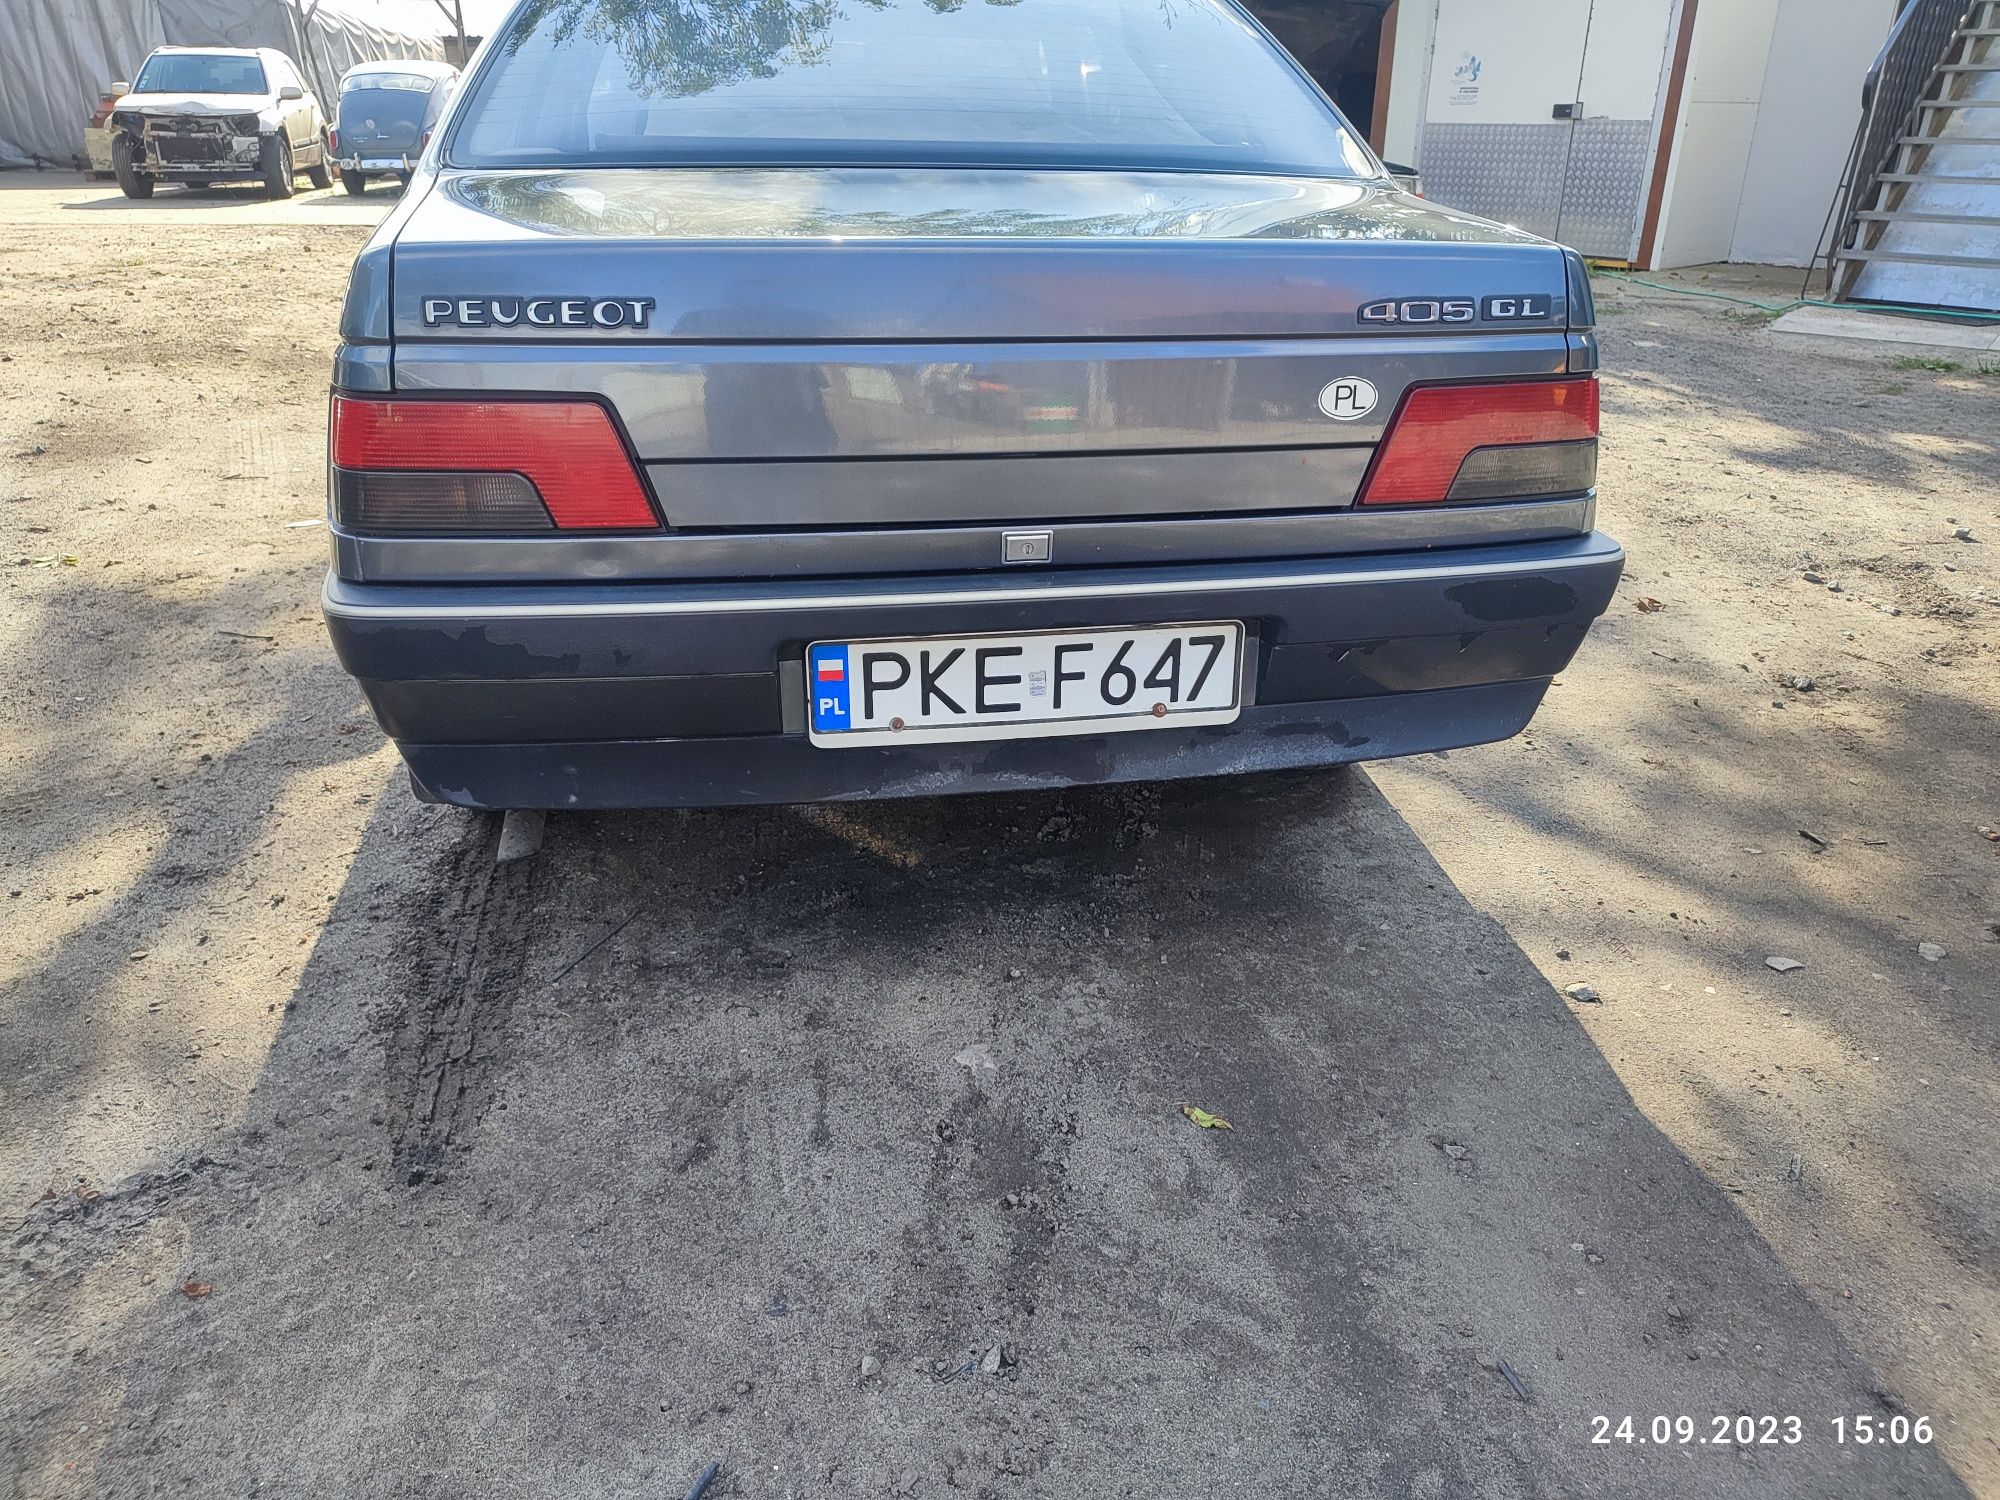 Peugeot 405 GL klasyk bez rdzy